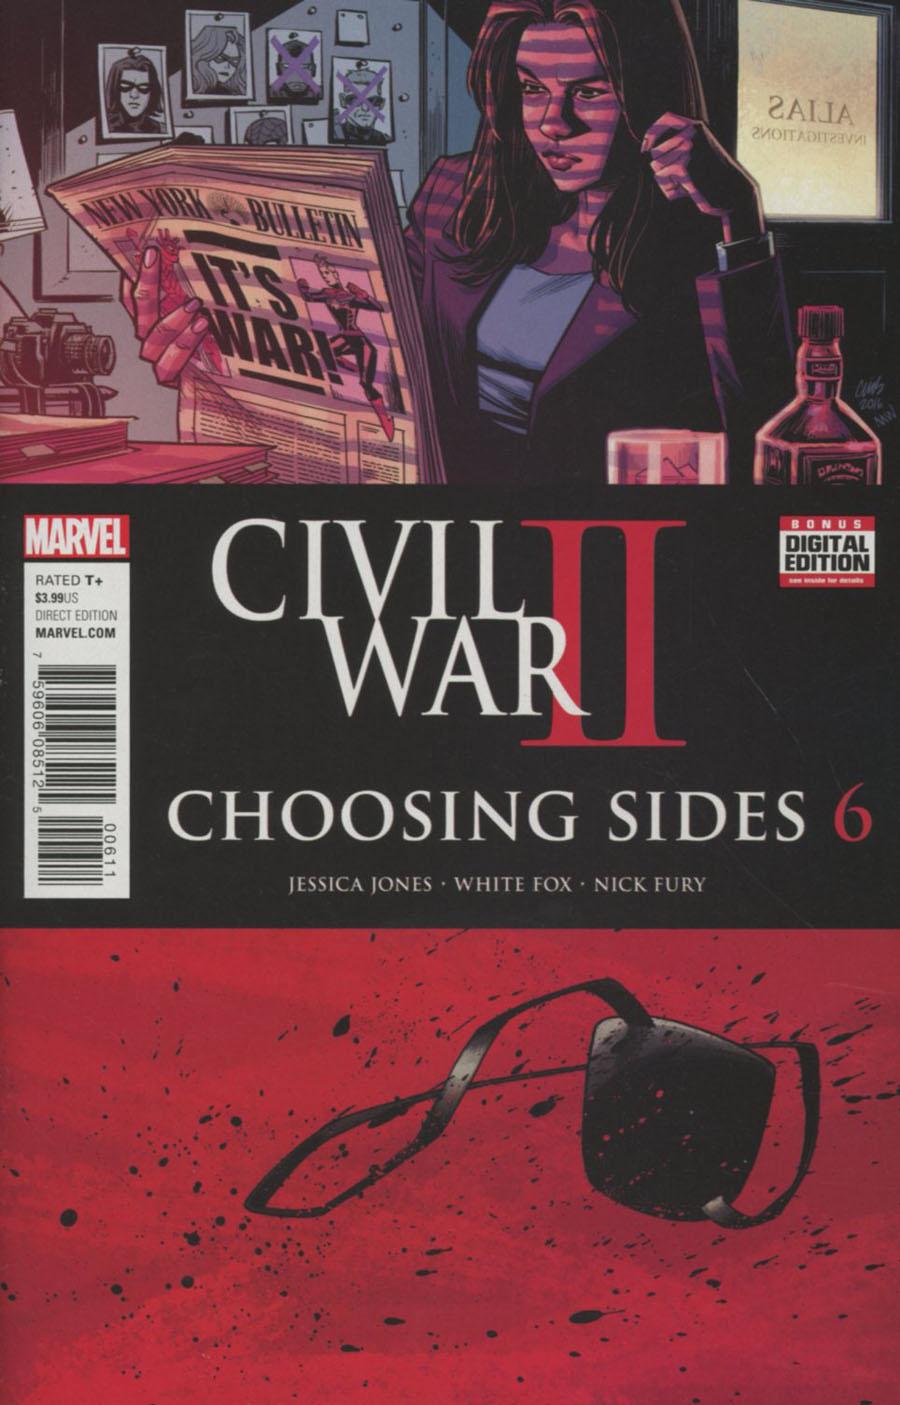 Civil War II Choosing Sides Vol. 1 #6